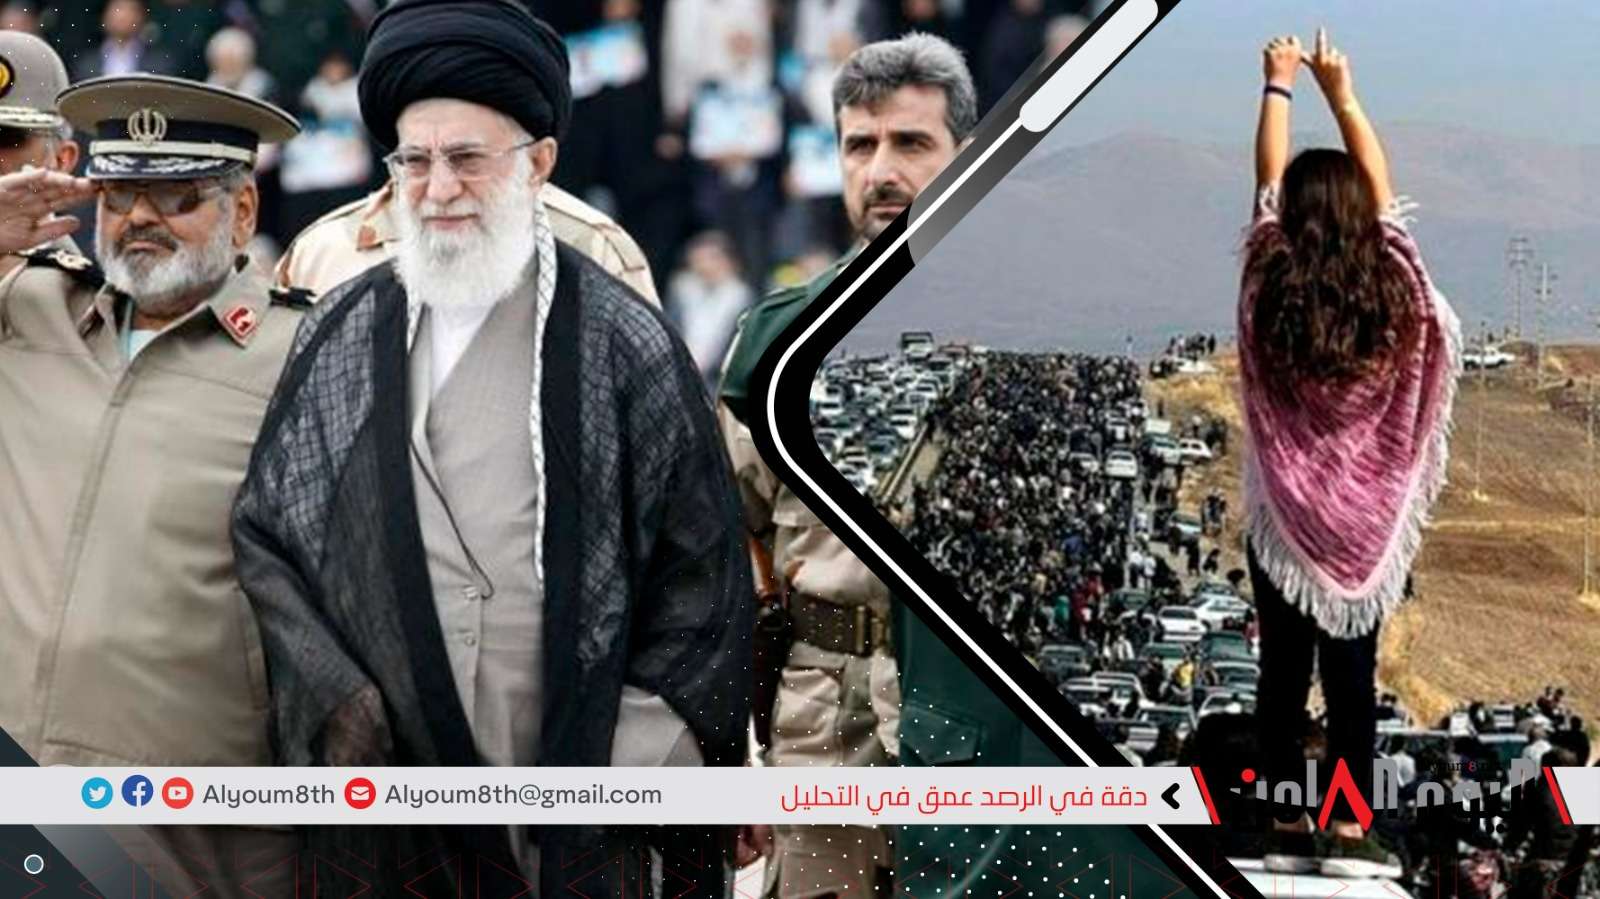 إيران.. تحدي الشارع للعقيدة والفترة القادمة قد تشهد سقوط سلطة رجال الدين